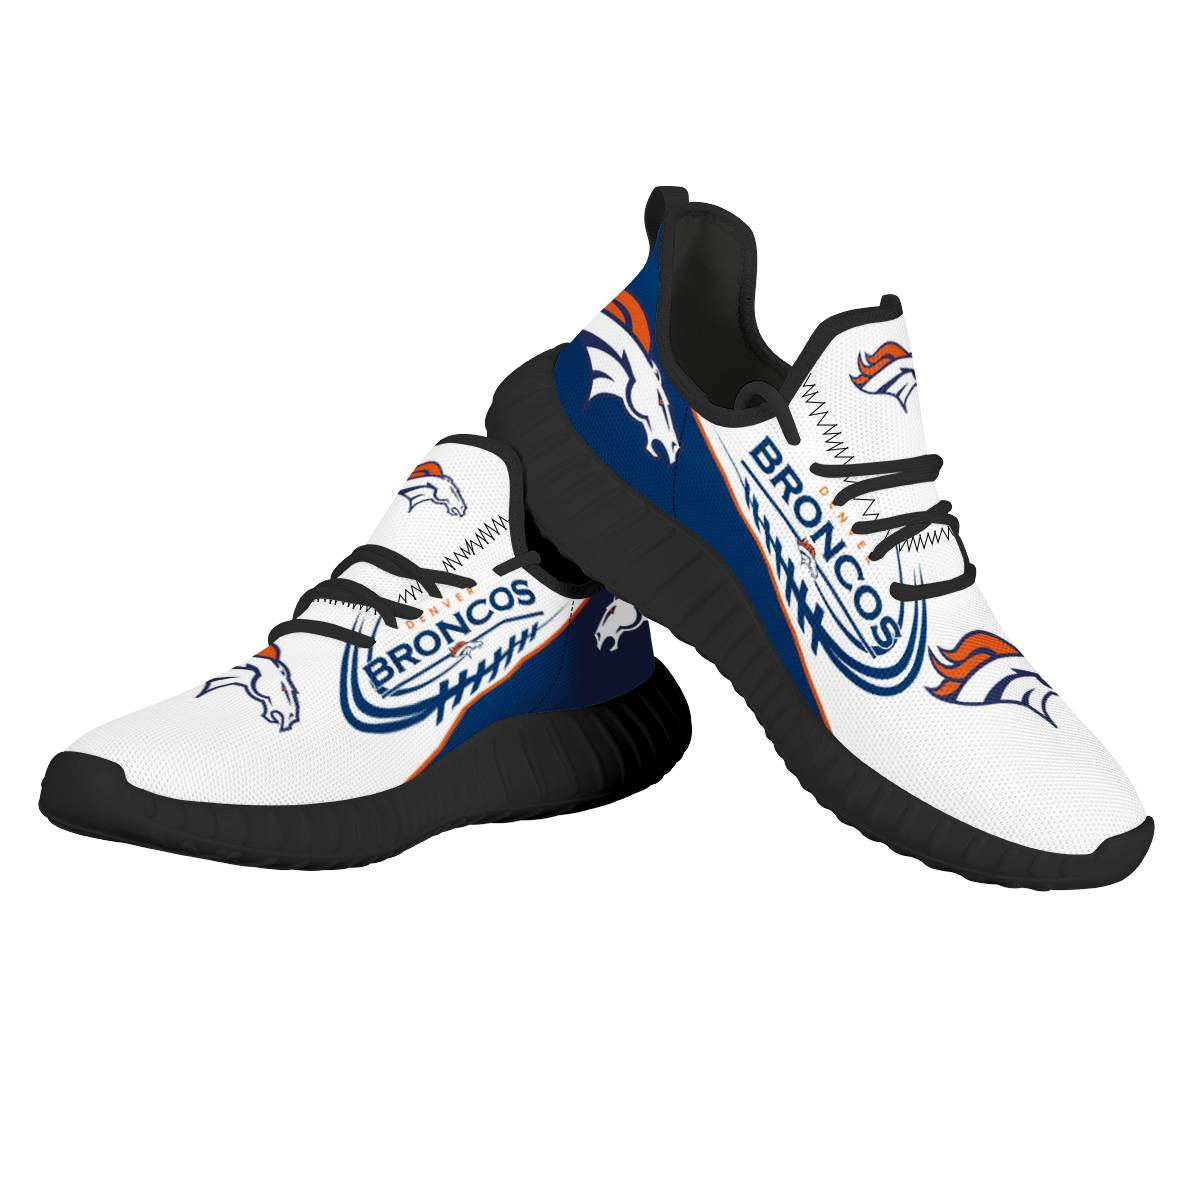 Women's Denver Broncos Mesh Knit Sneakers/Shoes 012